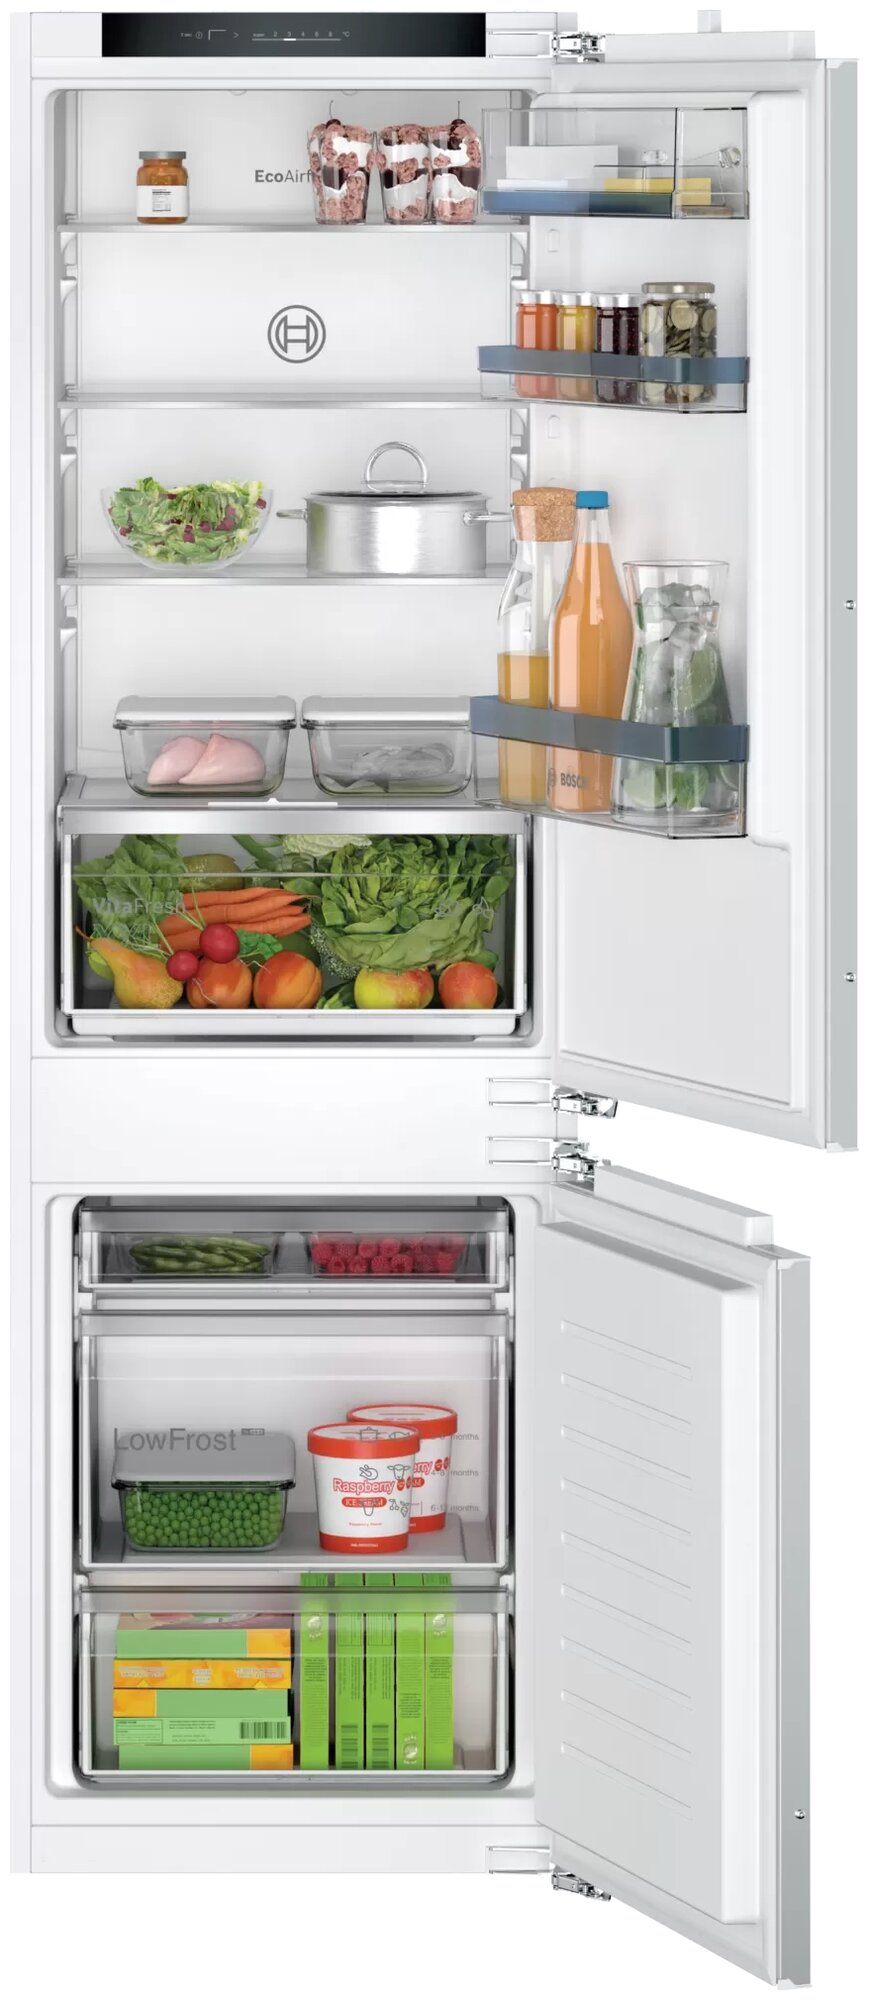 Serie 4, Встраиваемый холодильник с нижней морозильной камерой, Габариты (ВхШхГ) - 177,2х54,1х54,8 см, плоские шарниры, объём 265 (182+83) л, LowFrost, продвинутая электронная панель управления, Зона свежести VitaFresh для овощей и фруктов с регулировкой 